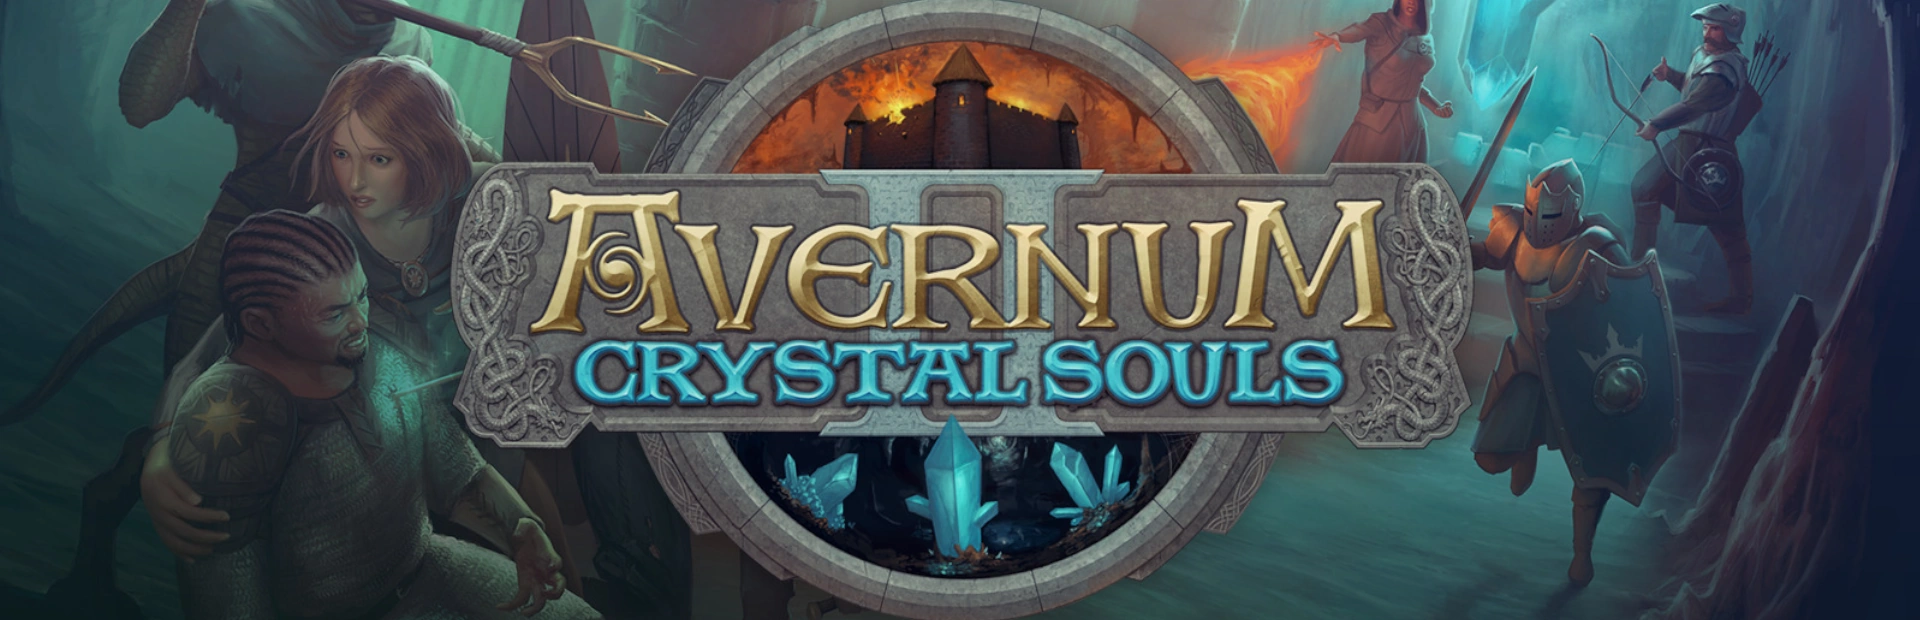 دانلود بازی Avernum 2 Crystal Souls برای کامپیوتر | گیمباتو